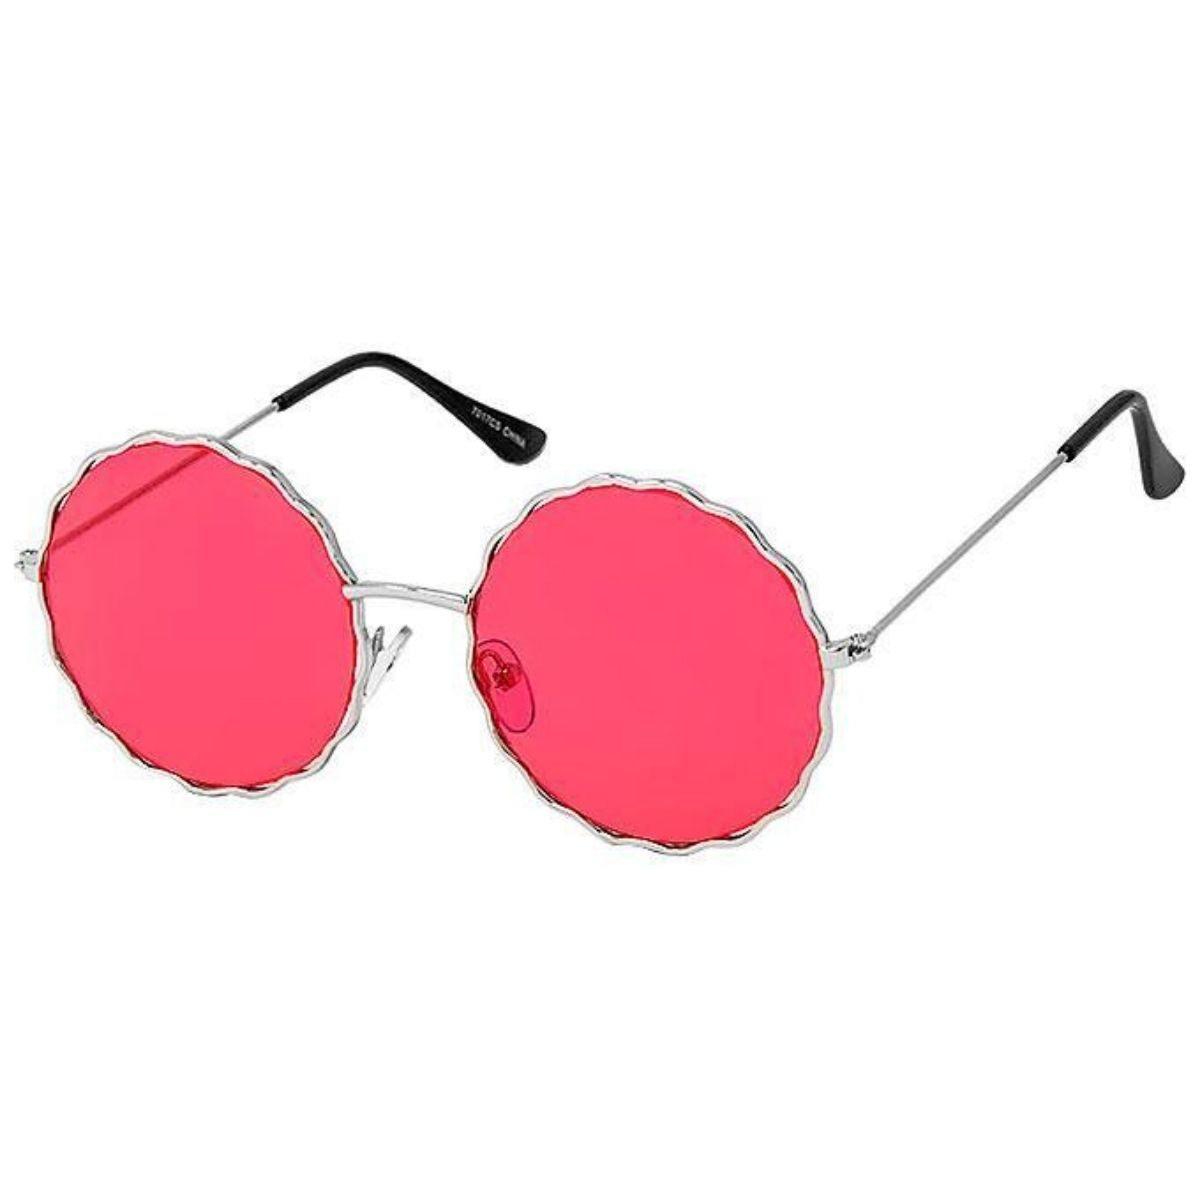 Red Wavy Round Wire Sunglasses